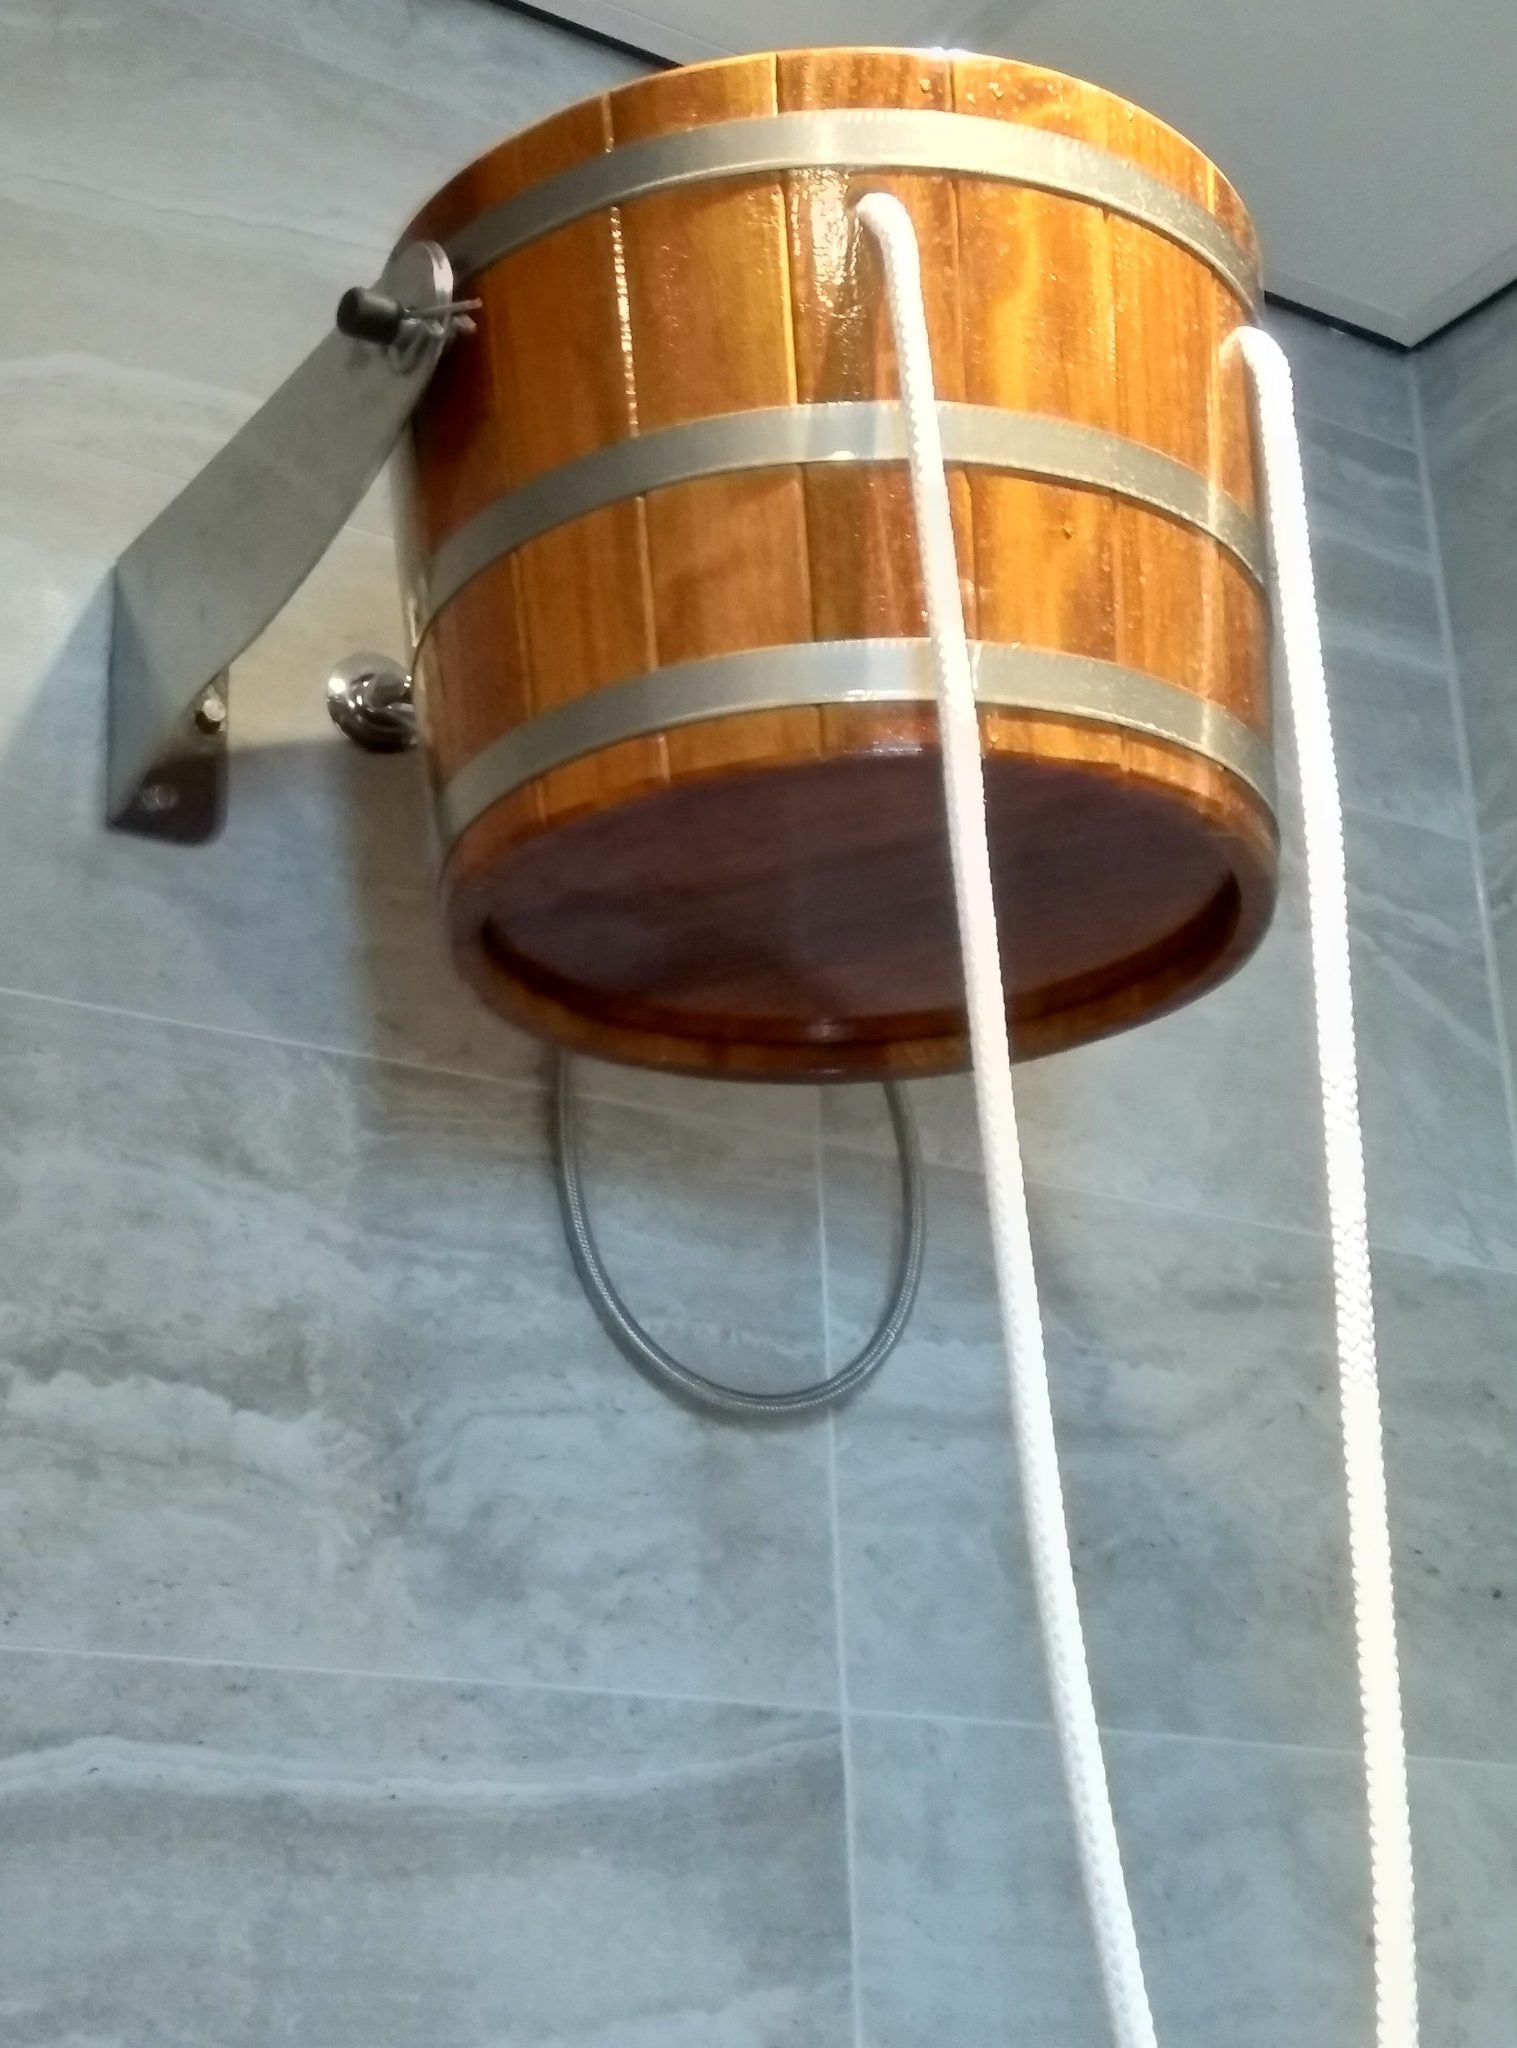 Sauna stortemmer 29 liter (binnen gebruik)